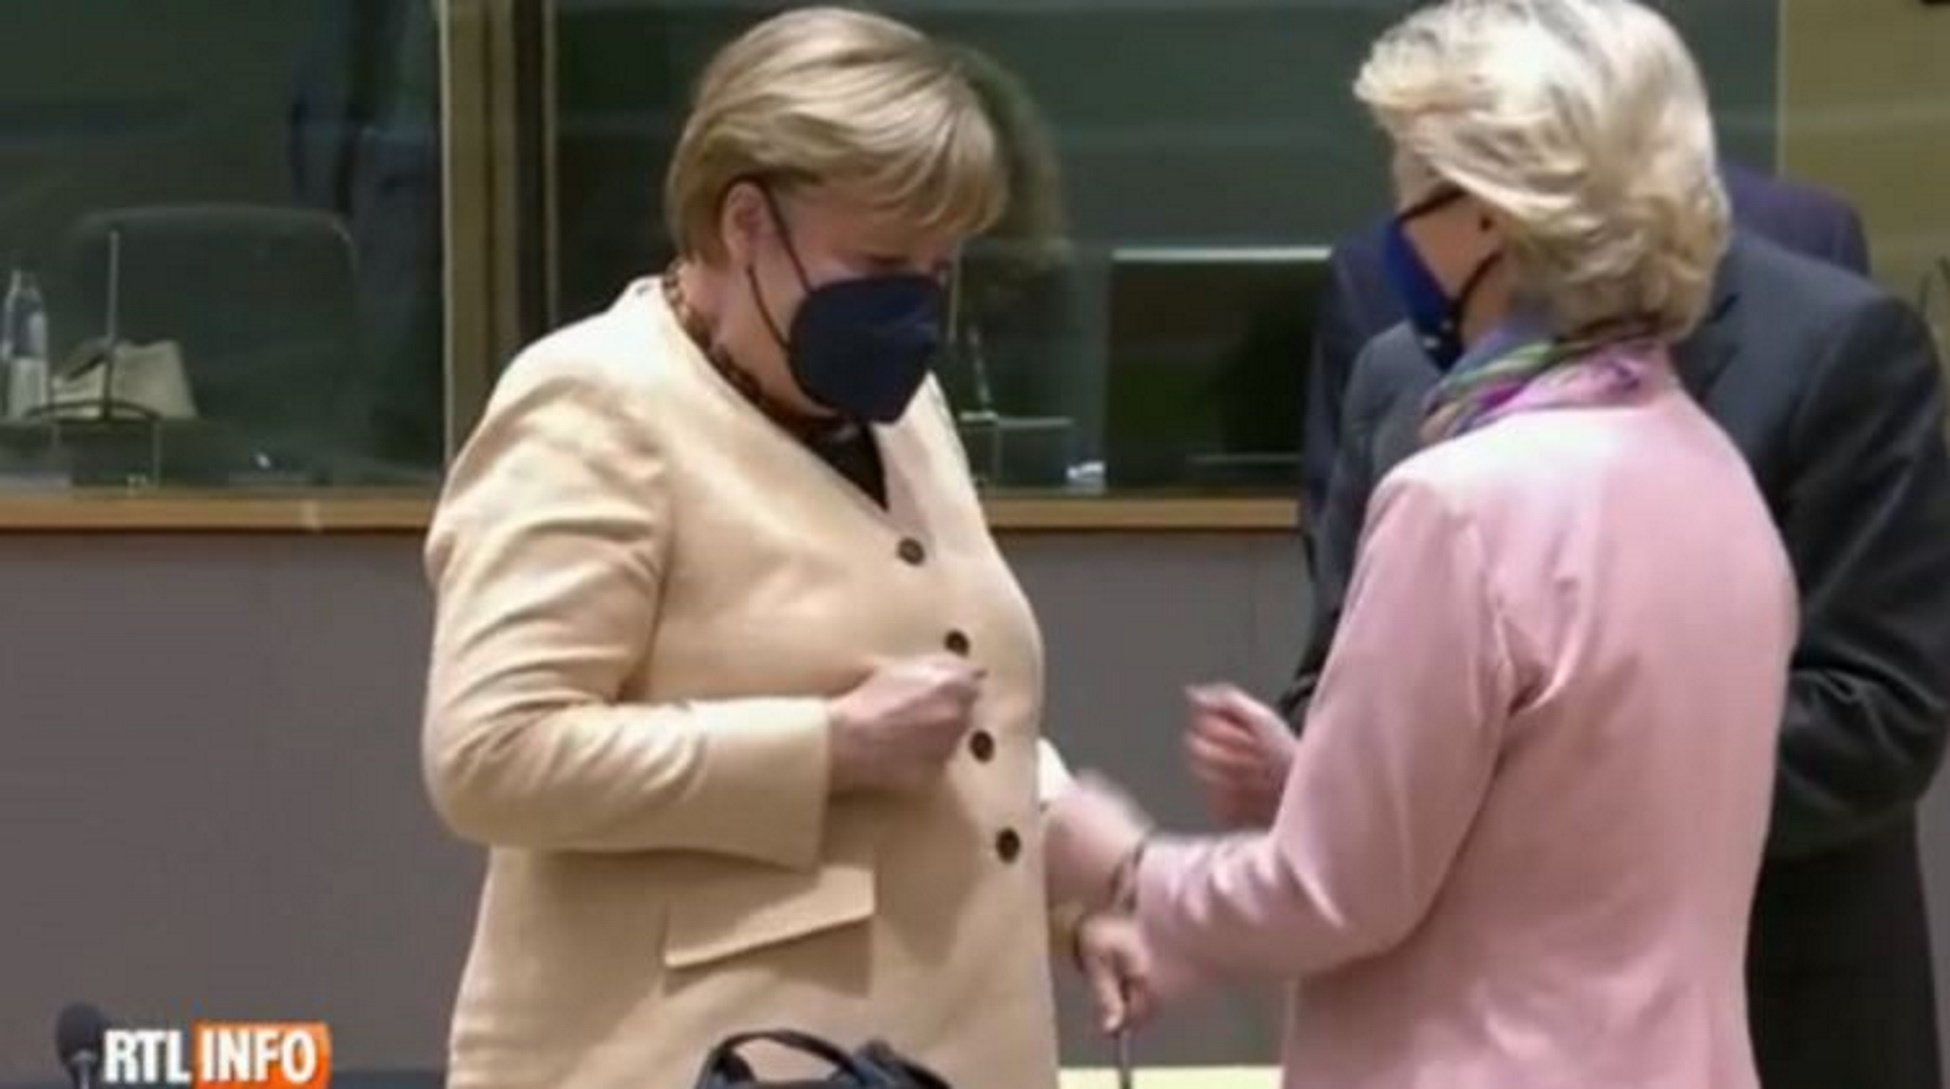 VíDEO | El moment de pànic d'Angela Merkel amb Von der Leyen